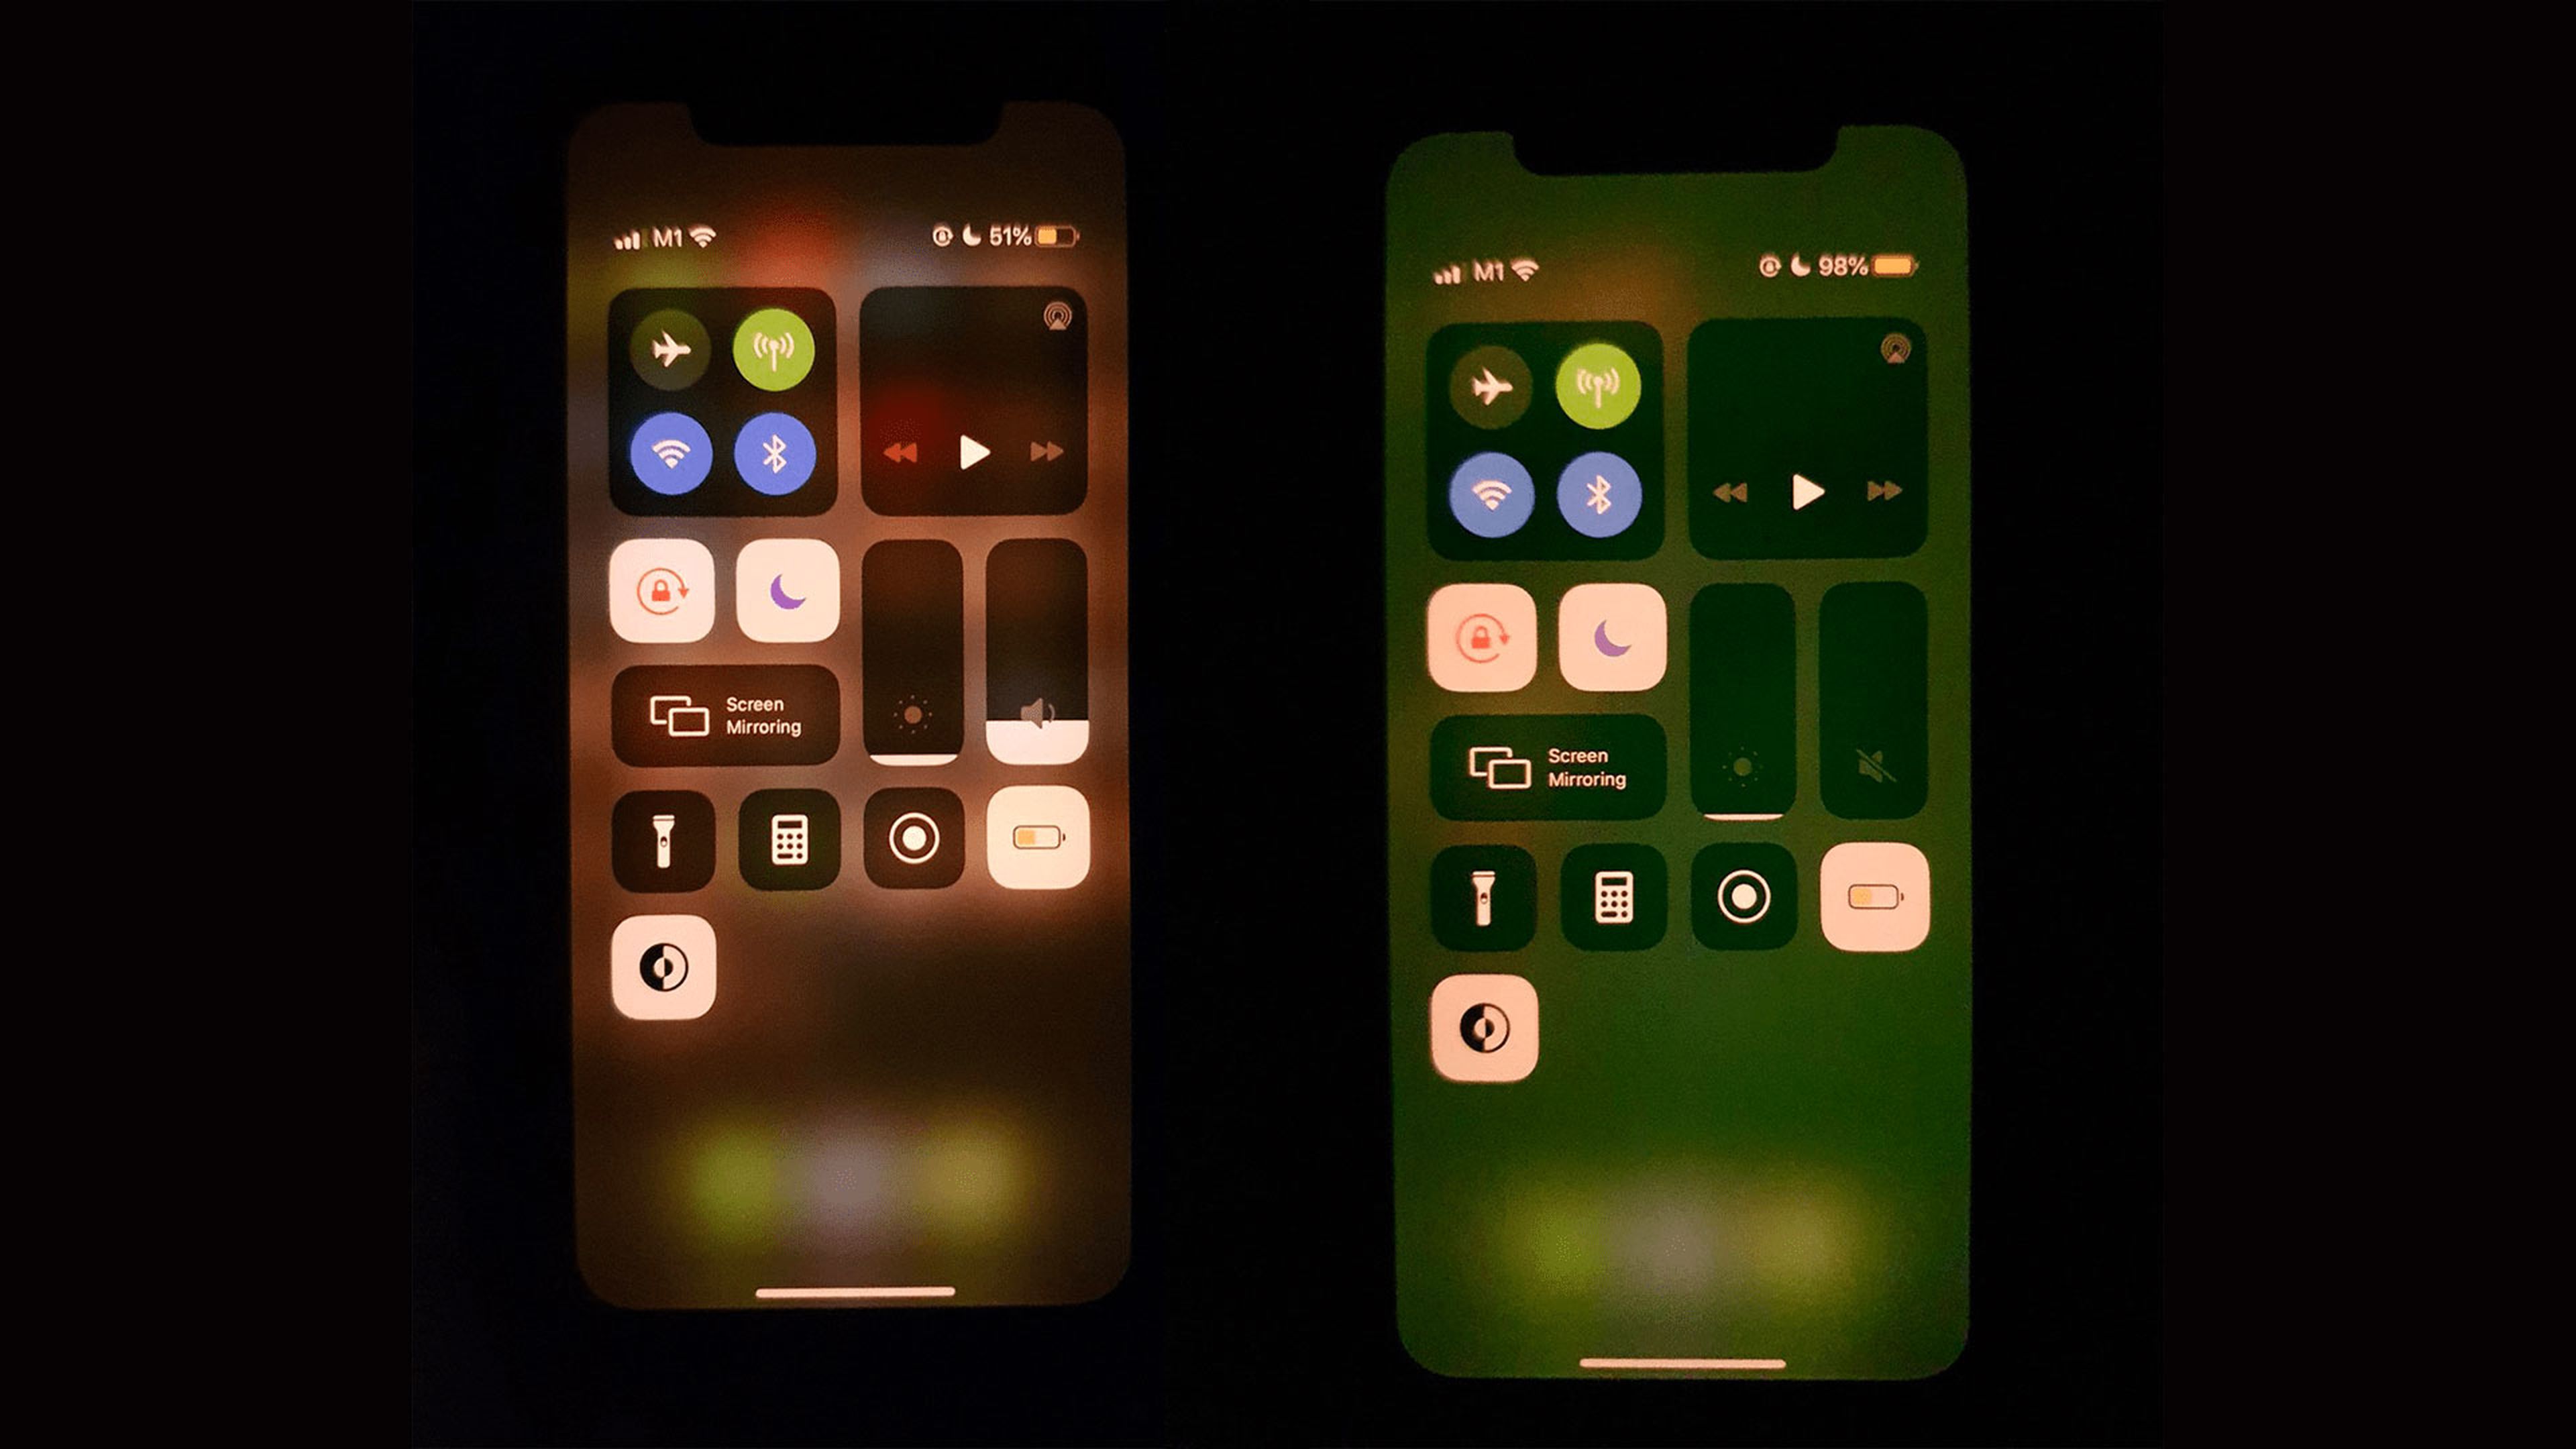 Este fallo hace que la pantalla de tu iPhone 11 cuente con tonalidades  verdes, y no hay solución